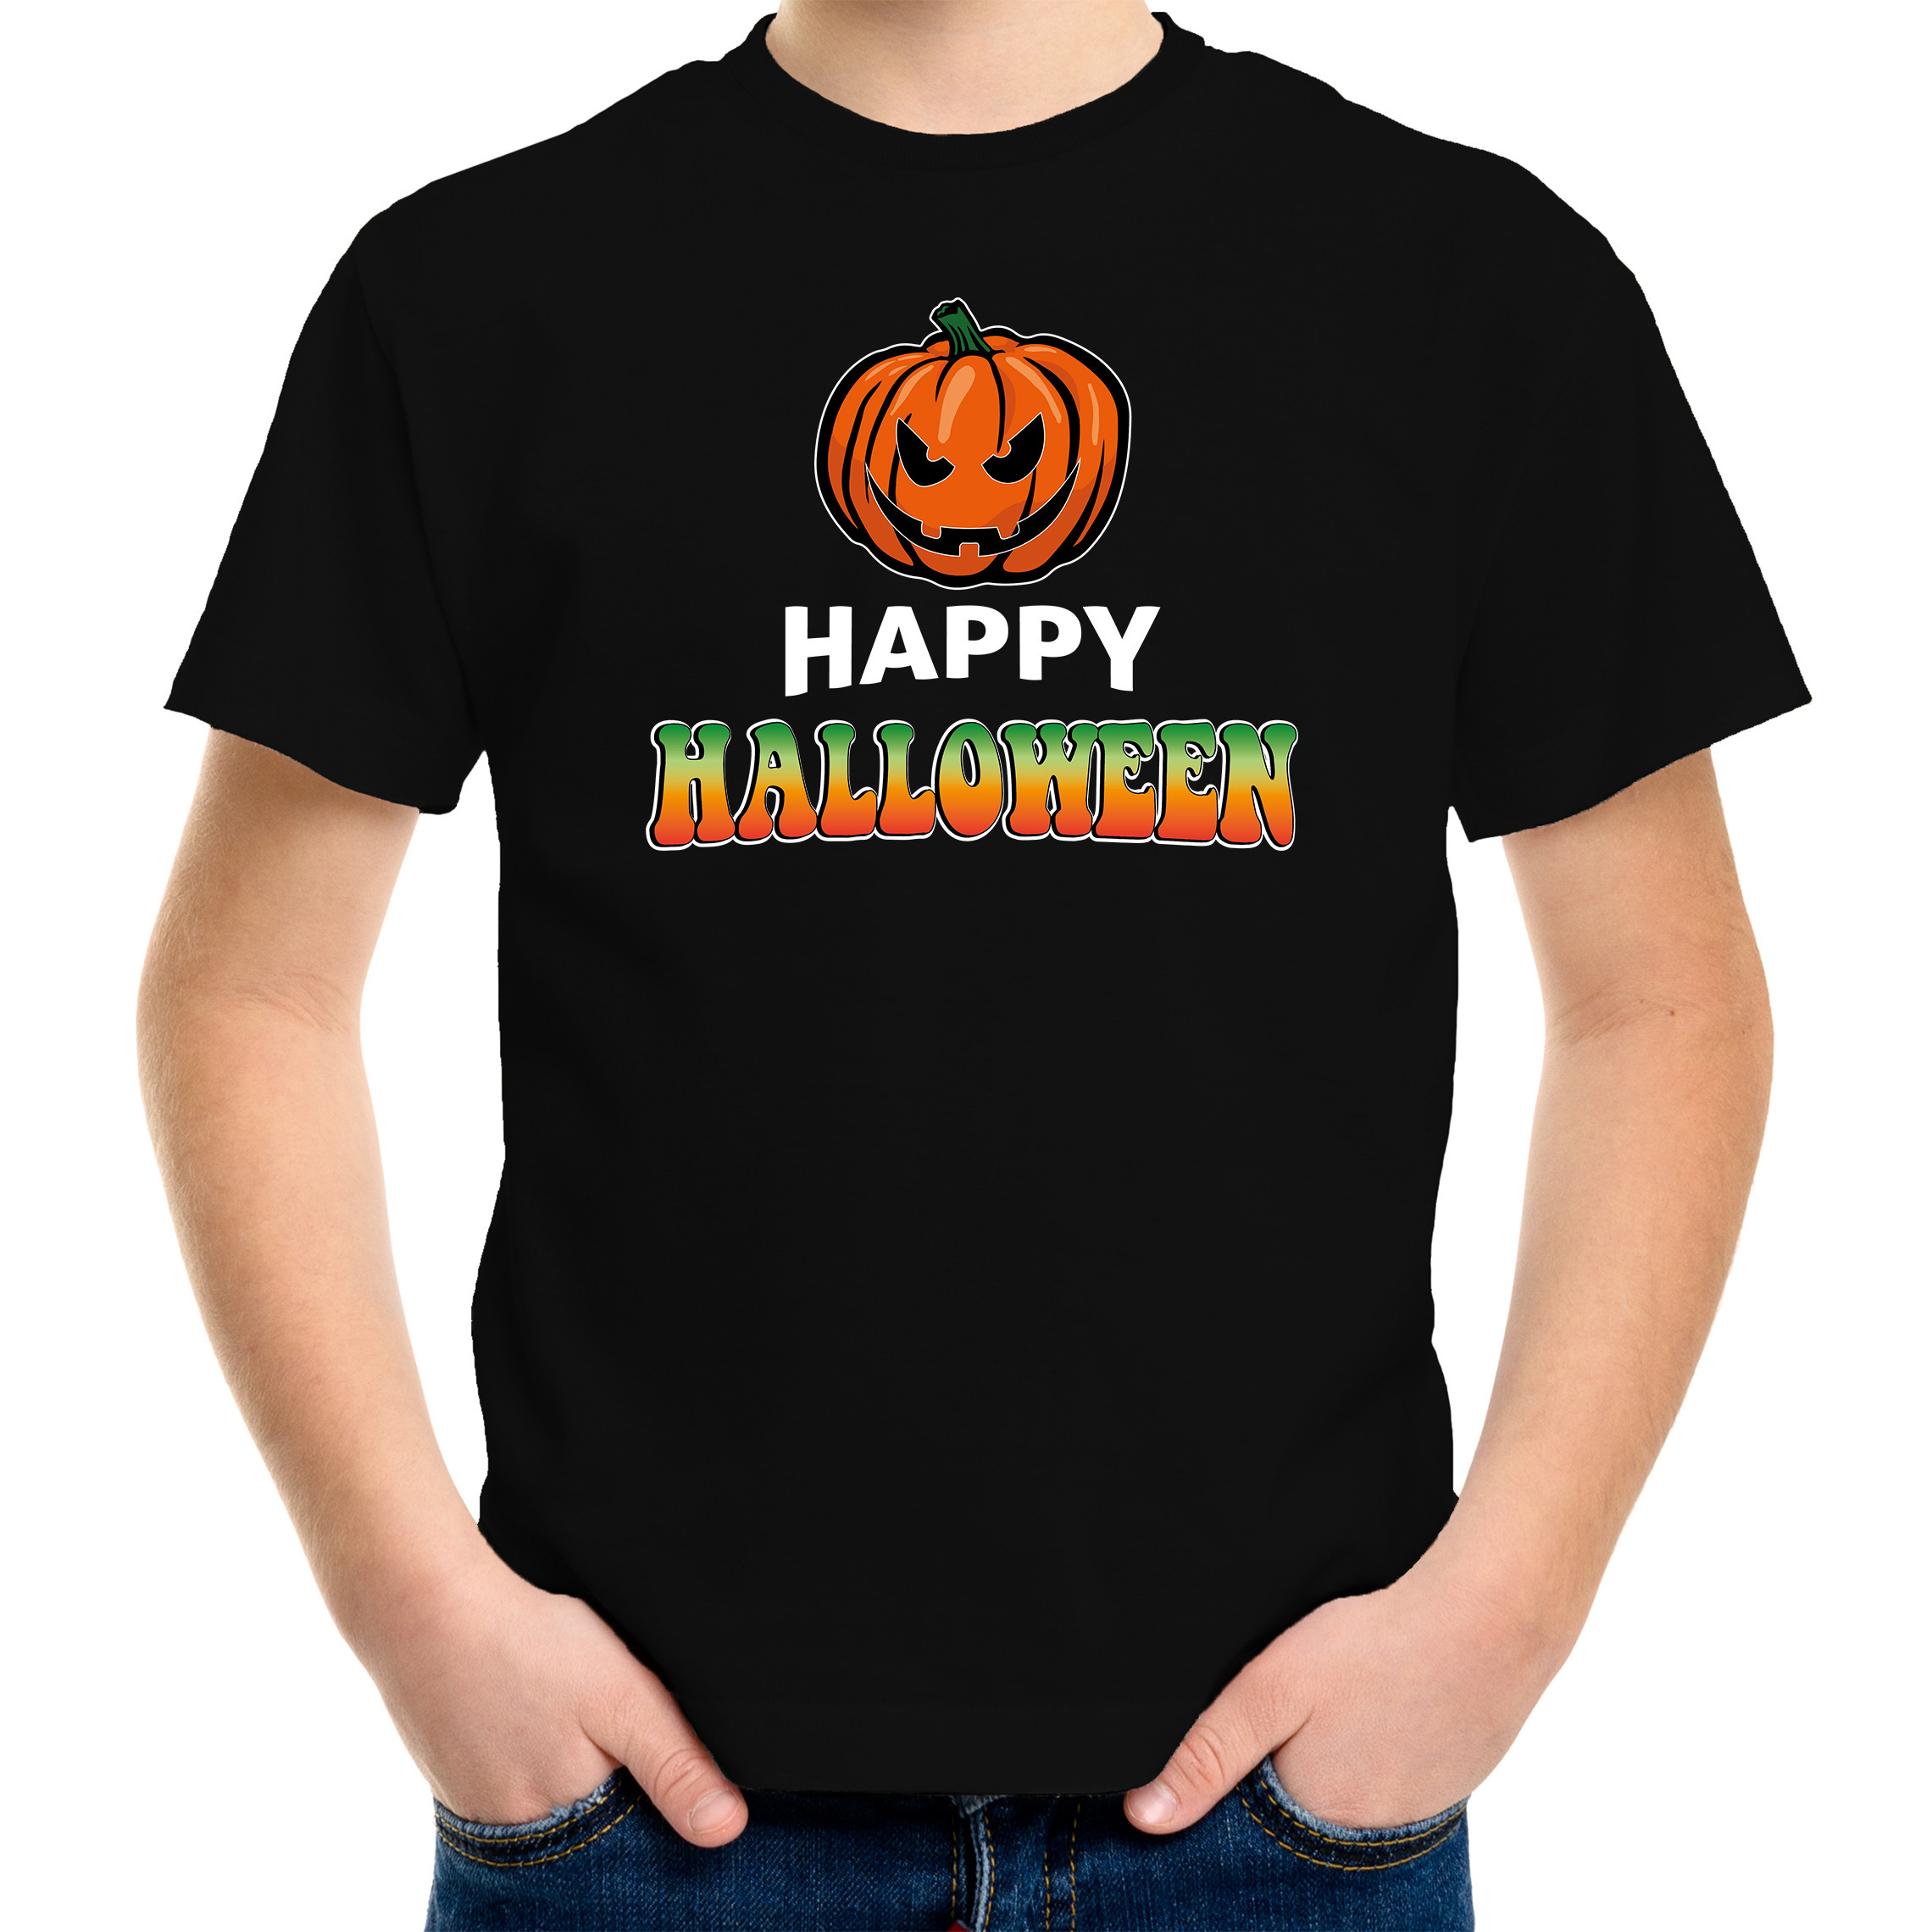 Pompoen / happy halloween verkleed t-shirt zwart voor kinderen